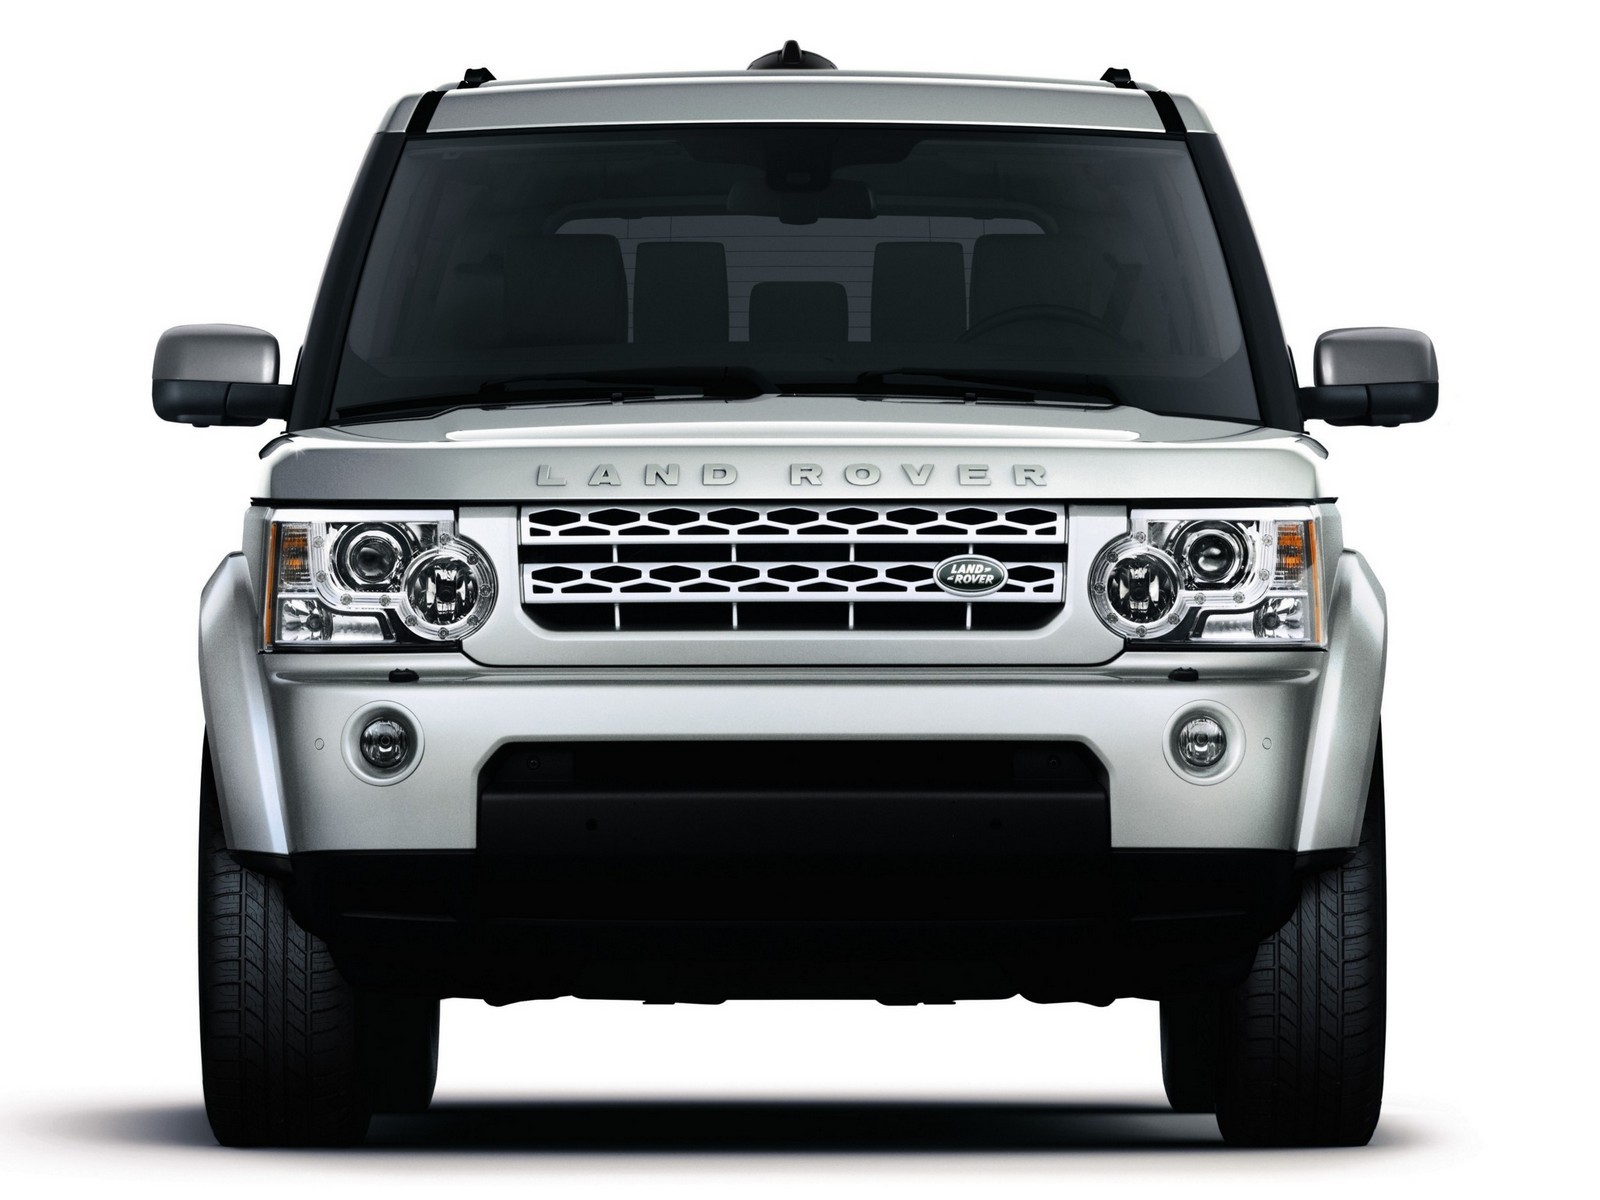 Риски дизеля и мощь бензина: стоит ли покупать Land Rover Discovery IV за 2,5 миллиона